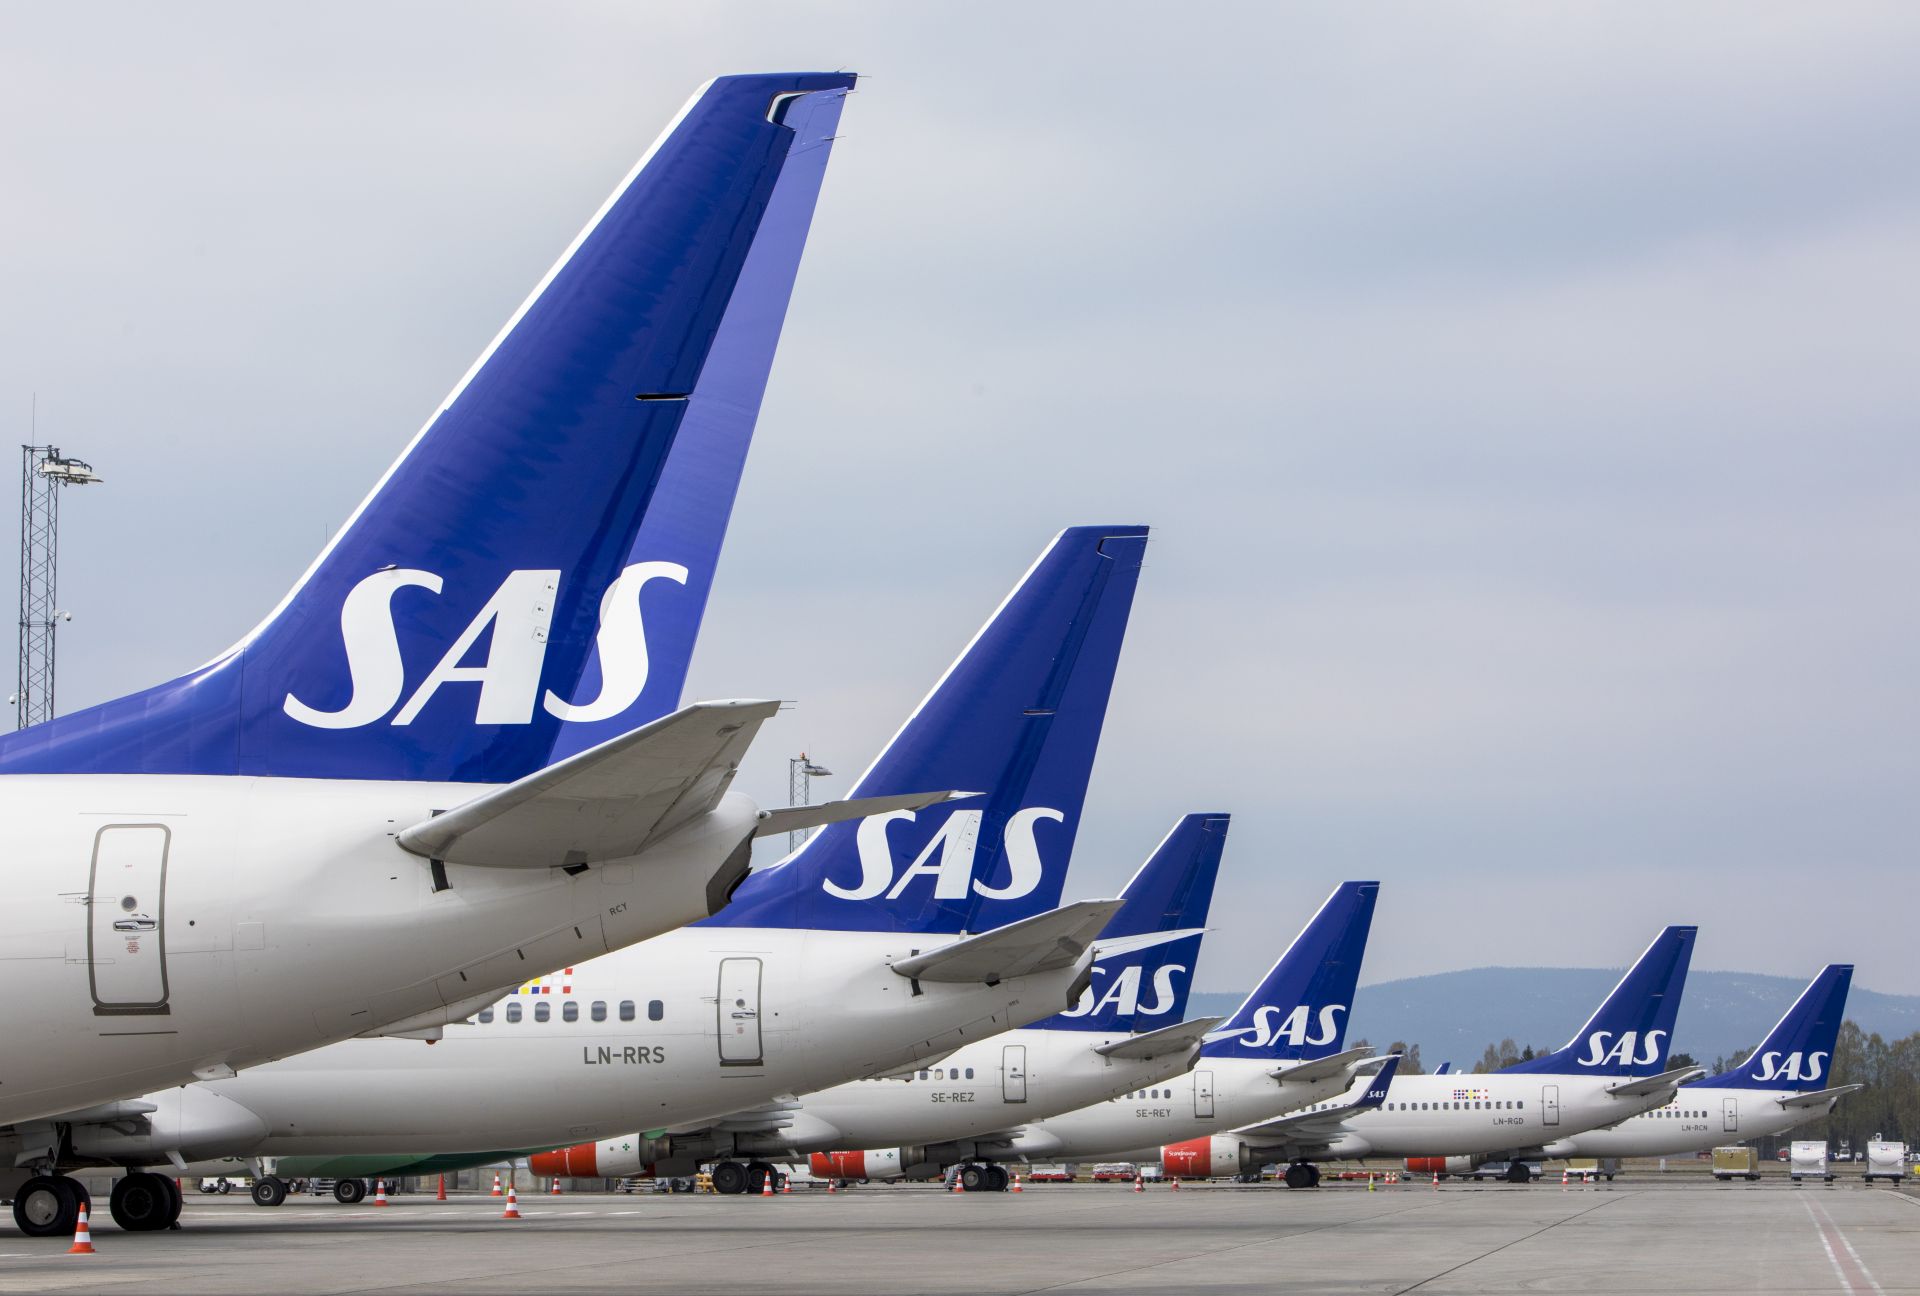 Скандинавската авиокомпания SAS (CAC) отмени 587 полети за утре, което ще засегне около 64 000 пътници